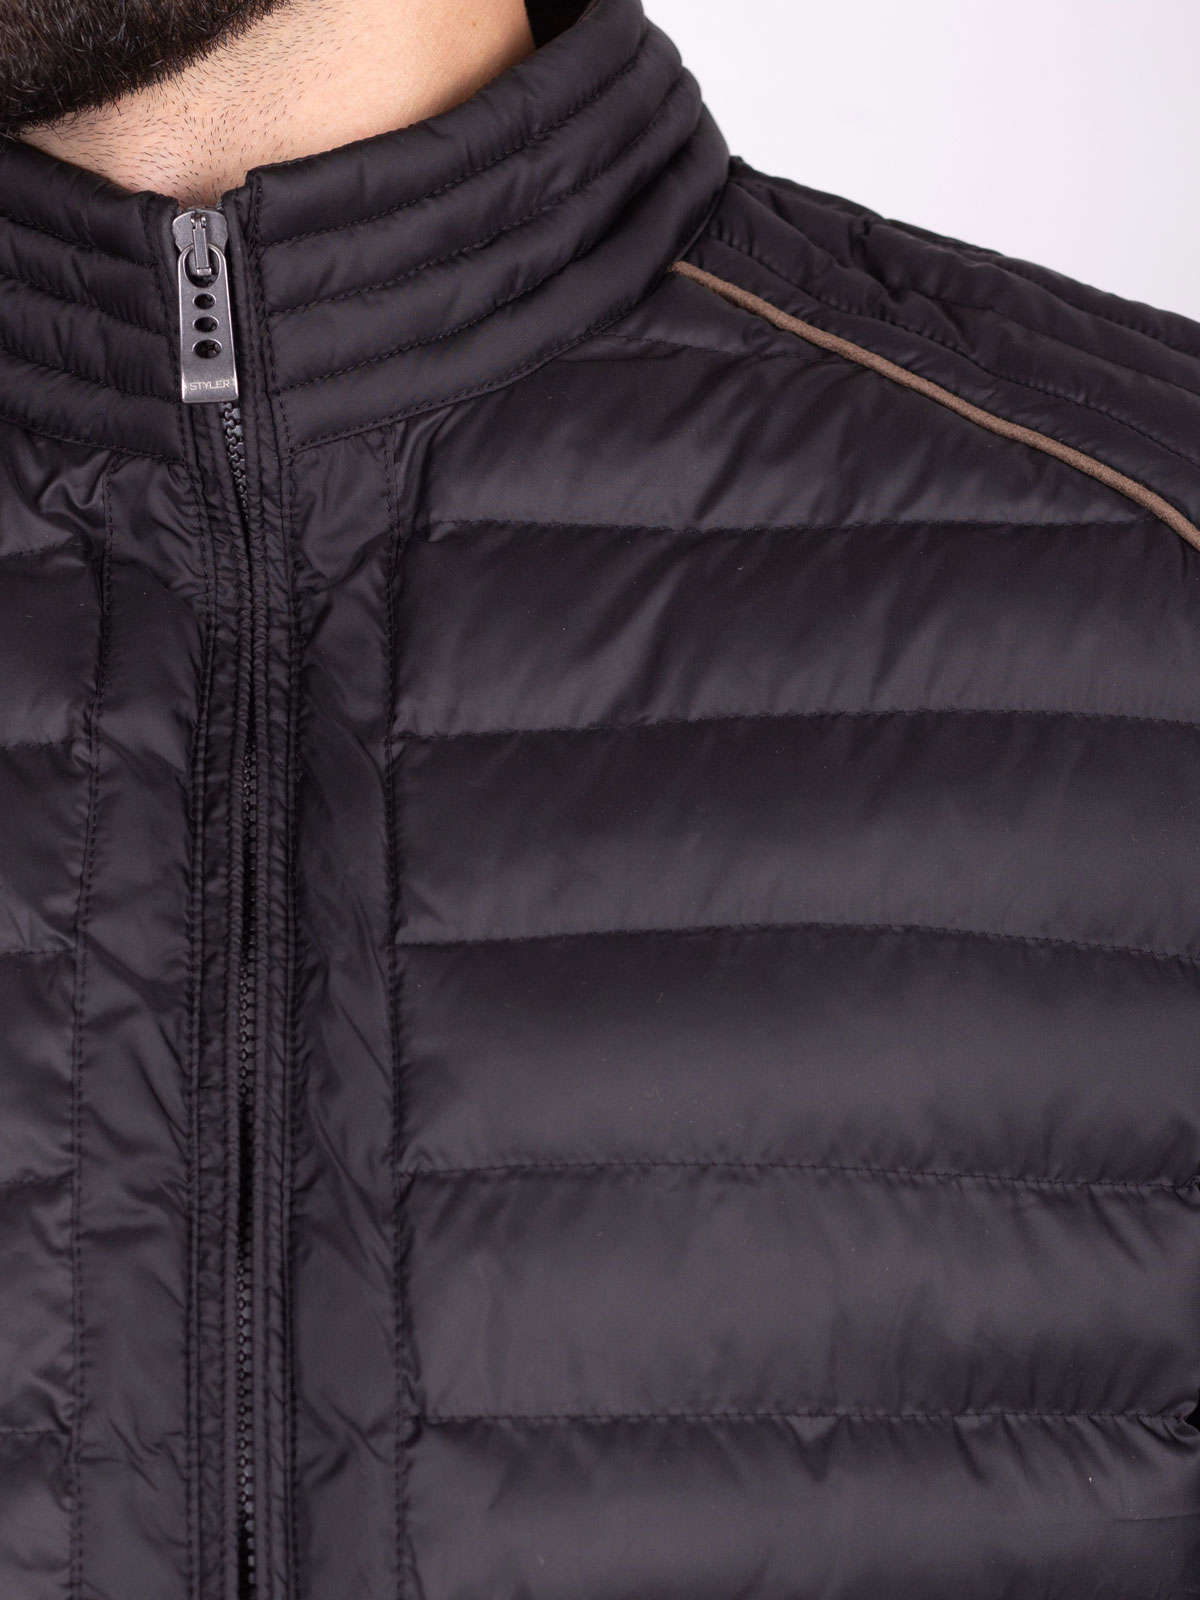 Jachetă neagră scurtă matlasată - 65112 € 72.55 img3